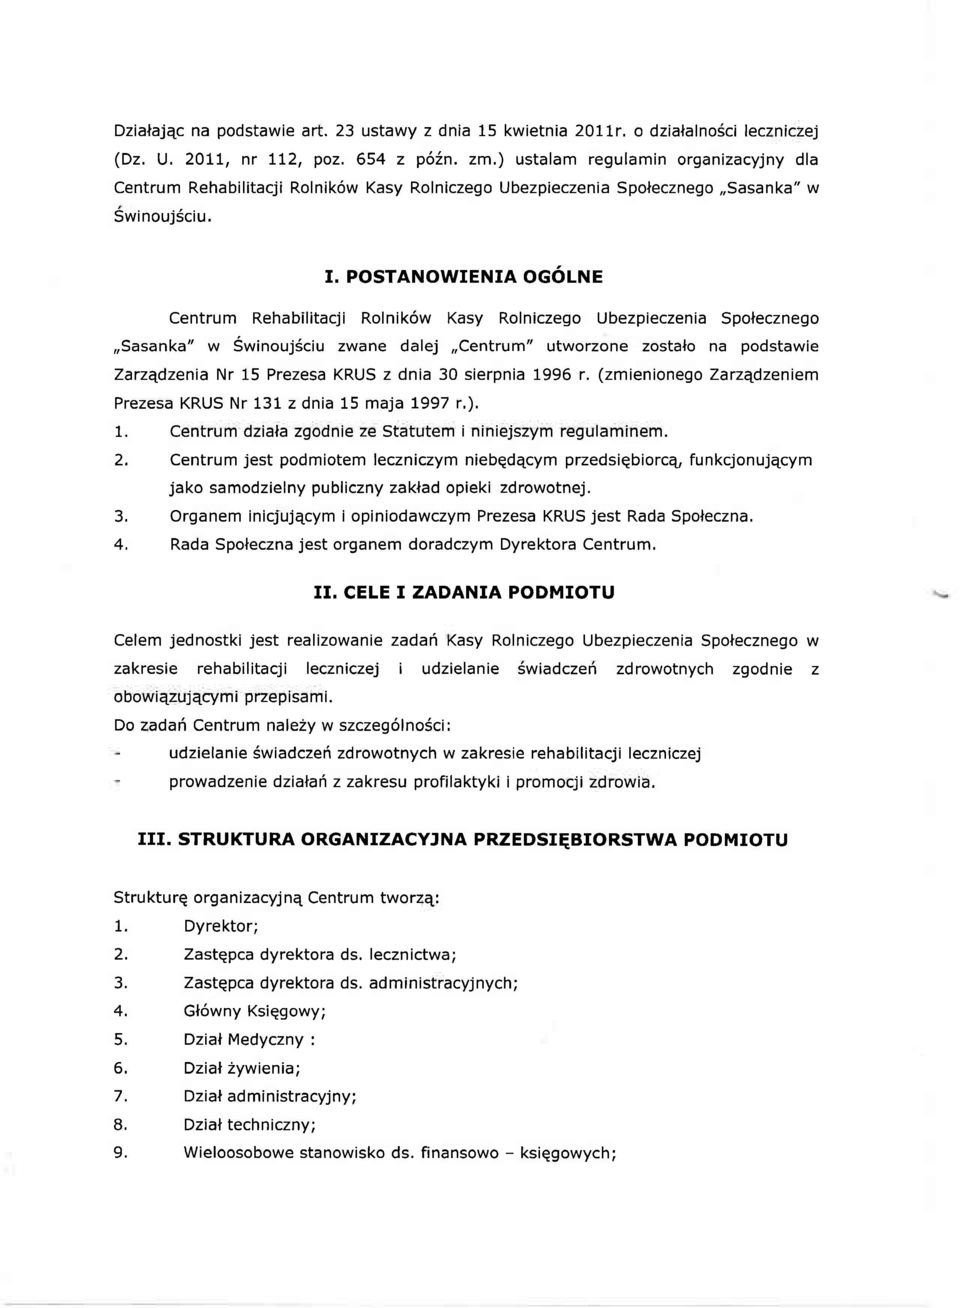 POSTANOWIENIA OGÓLNE Centrum Rehabilitacji Rolników Kasy Rolniczego Ubezpieczenia Społecznego Sasanka" w Świnoujściu zwane dalej Centrum" utworzone zostało na podstawie Zarządzenia Nr 15 Prezesa KRUS